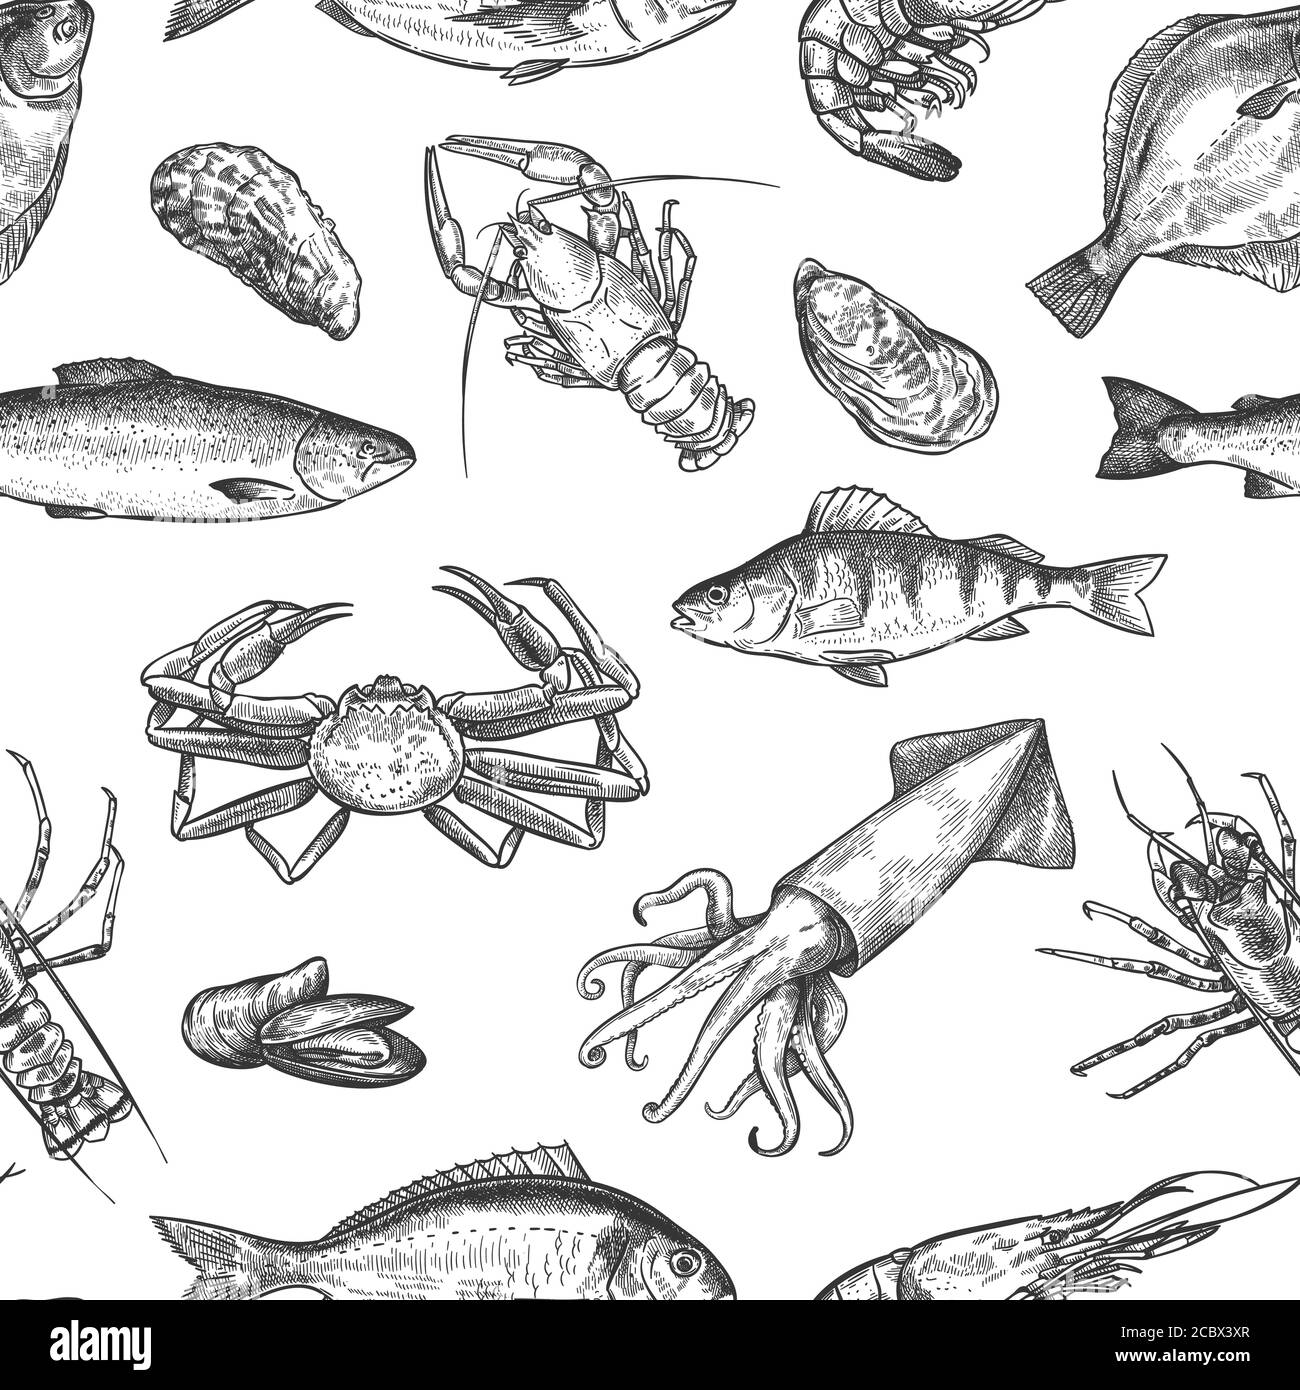 Motif de fruits de mer sans coutures. Le homard, le crabe, l'huître et la moule, le calmar, les crevettes et les poissons dessinés à la main dessinés sur la texture vectorielle de la vie marine Illustration de Vecteur